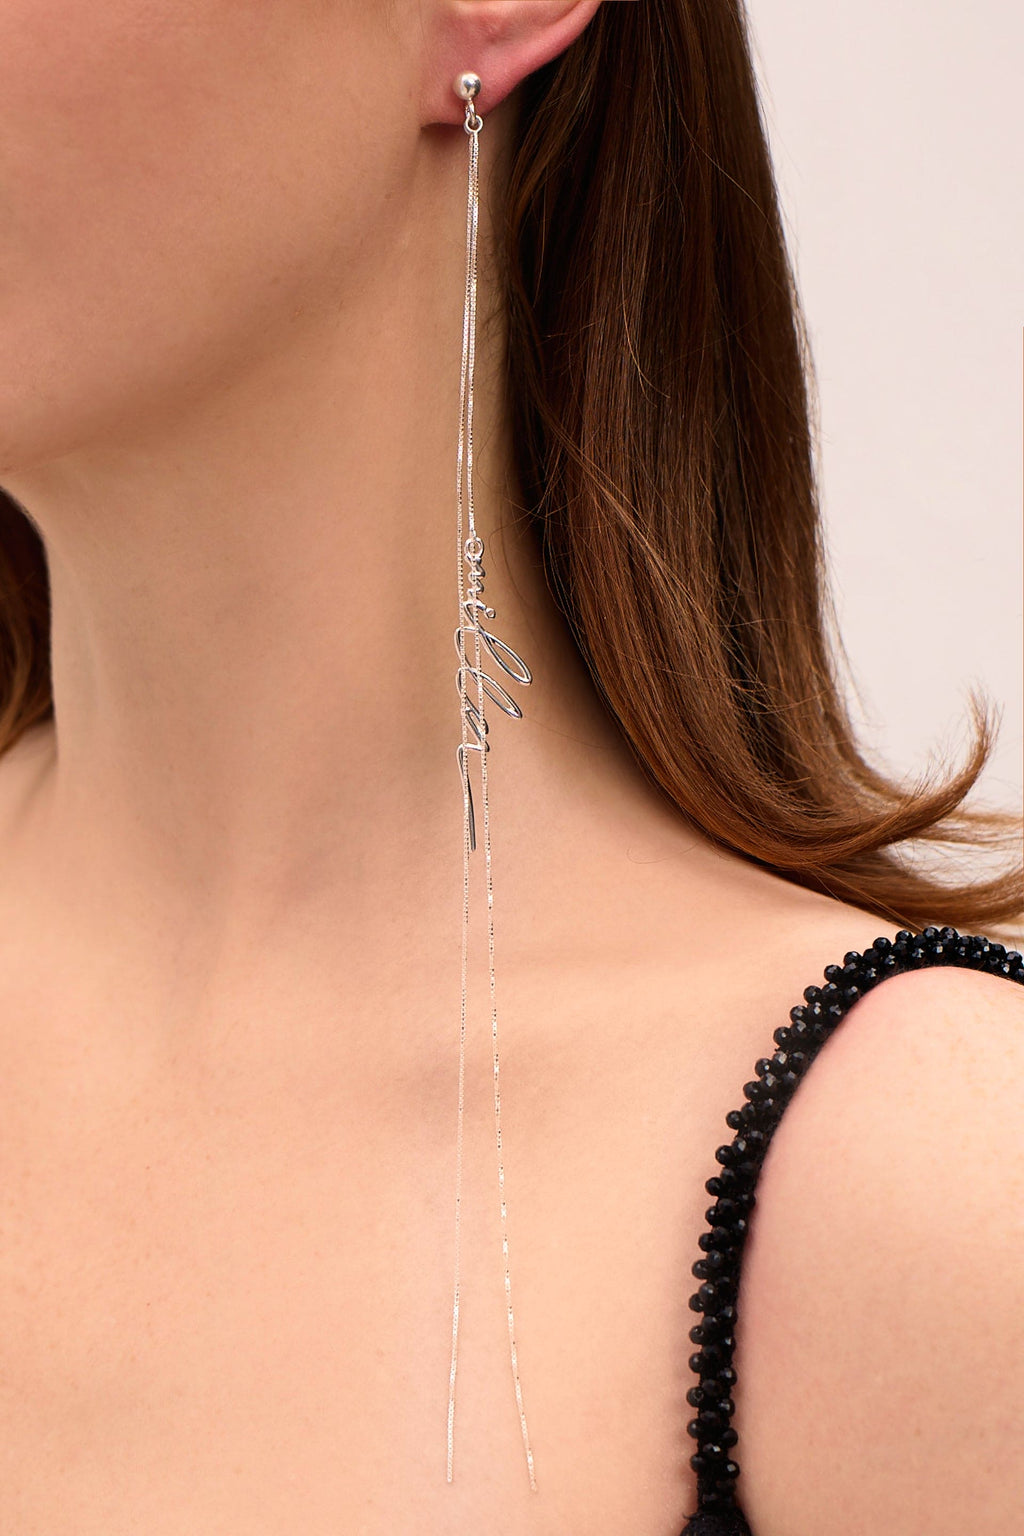 Classy 2-chain drop earrings in sterling silver